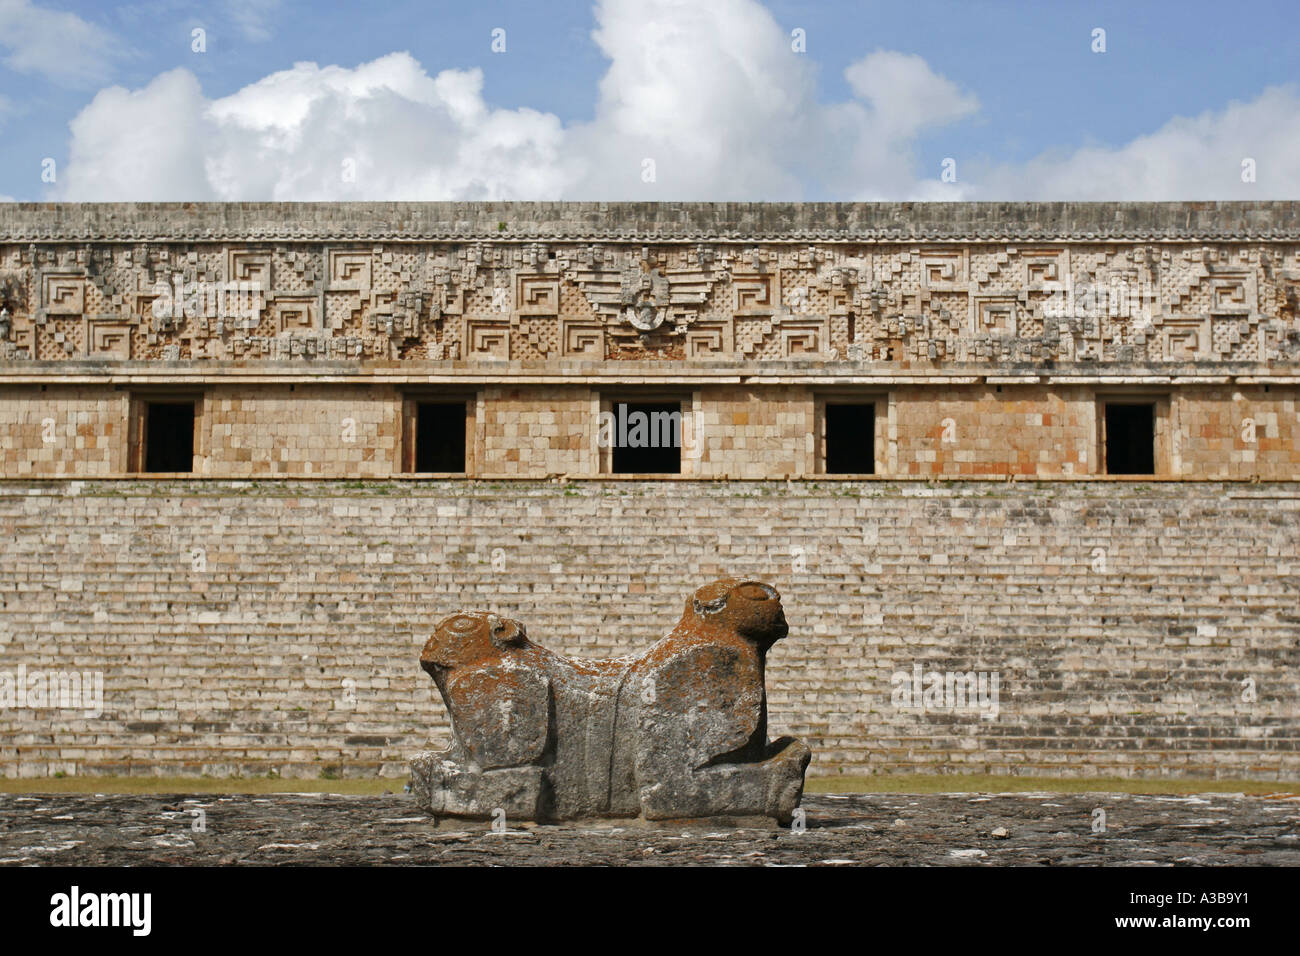 The Governor's Palace Uxmal Mayan Ruins Yucatan Mexico Stock Photo